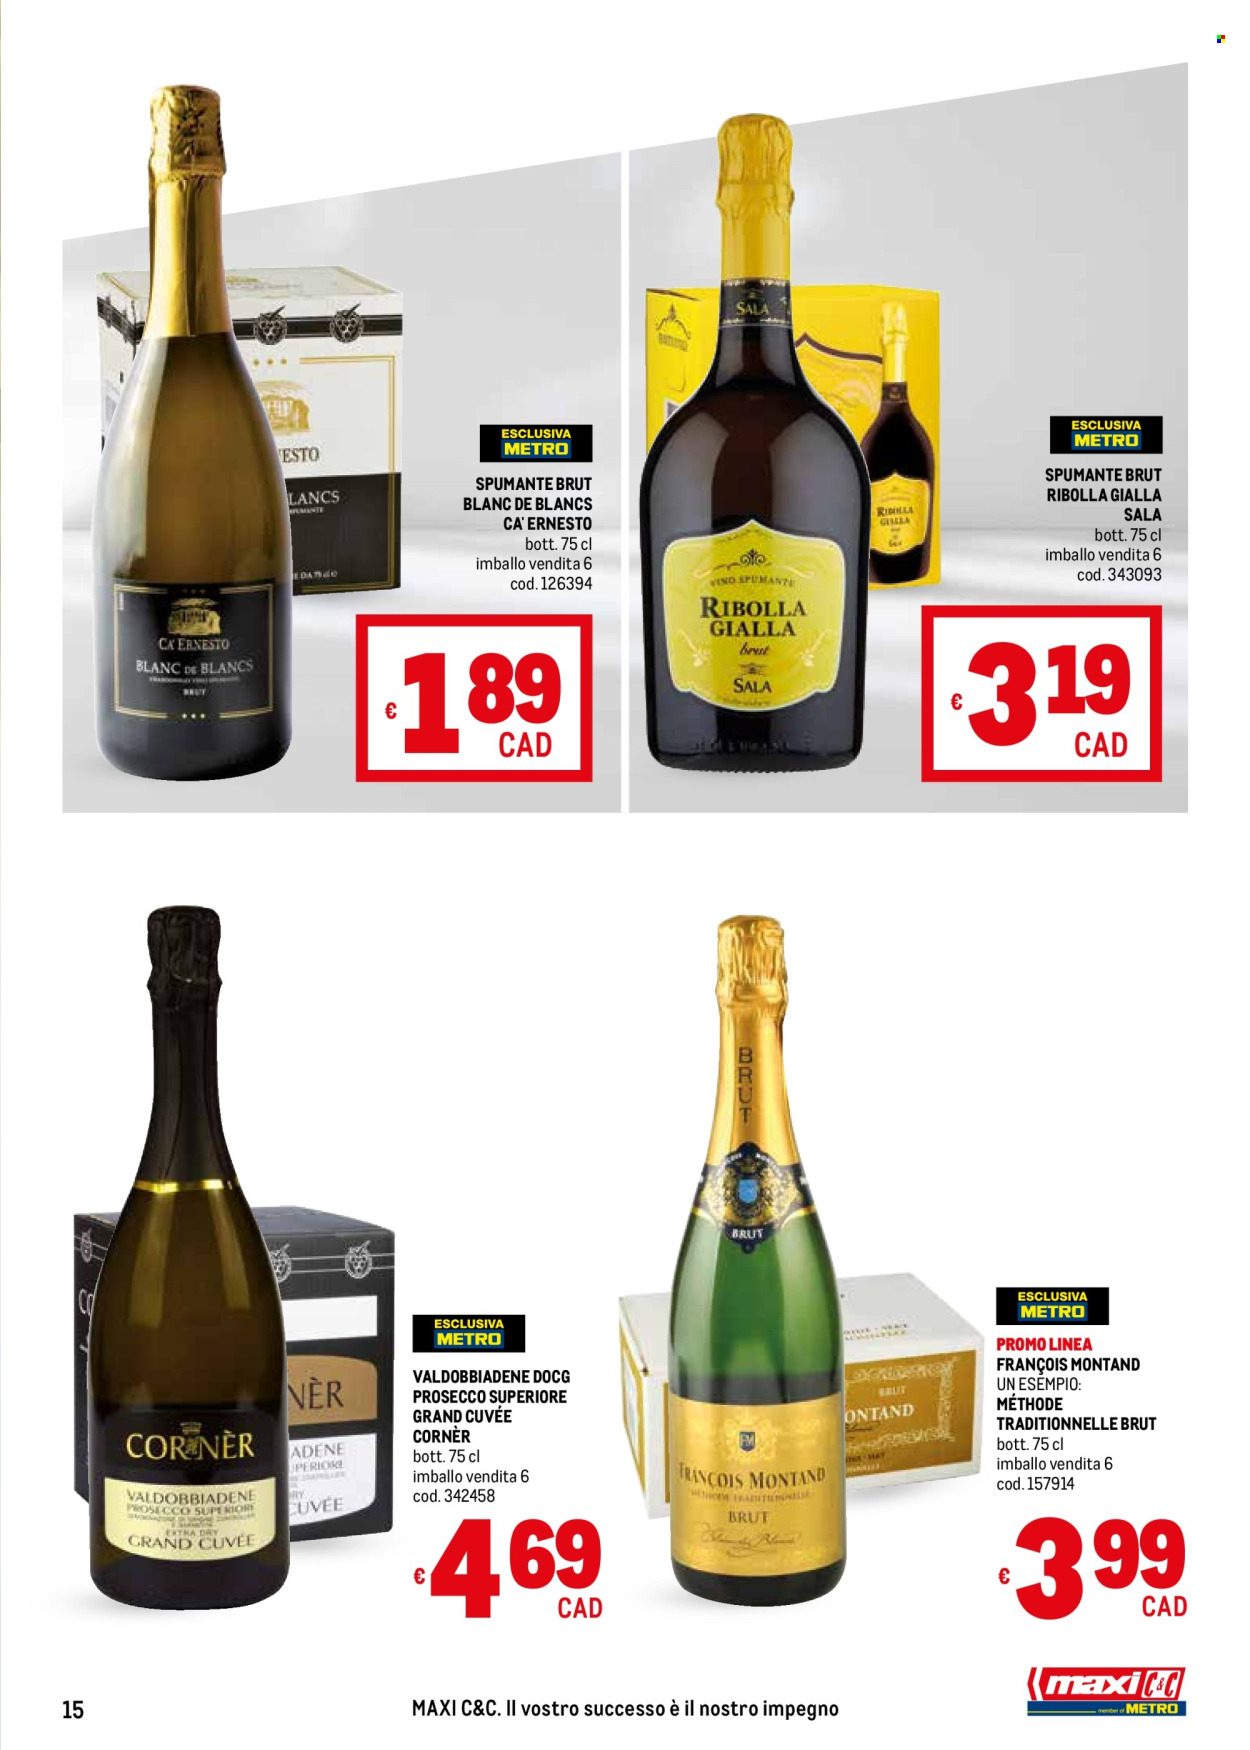 thumbnail - Volantino Metro - Prodotti in offerta - bevanda alcolica, vino bianco, Valdobbiadene, Spumante, Prosecco, vino, Ribolla Gialla. Pagina 15.